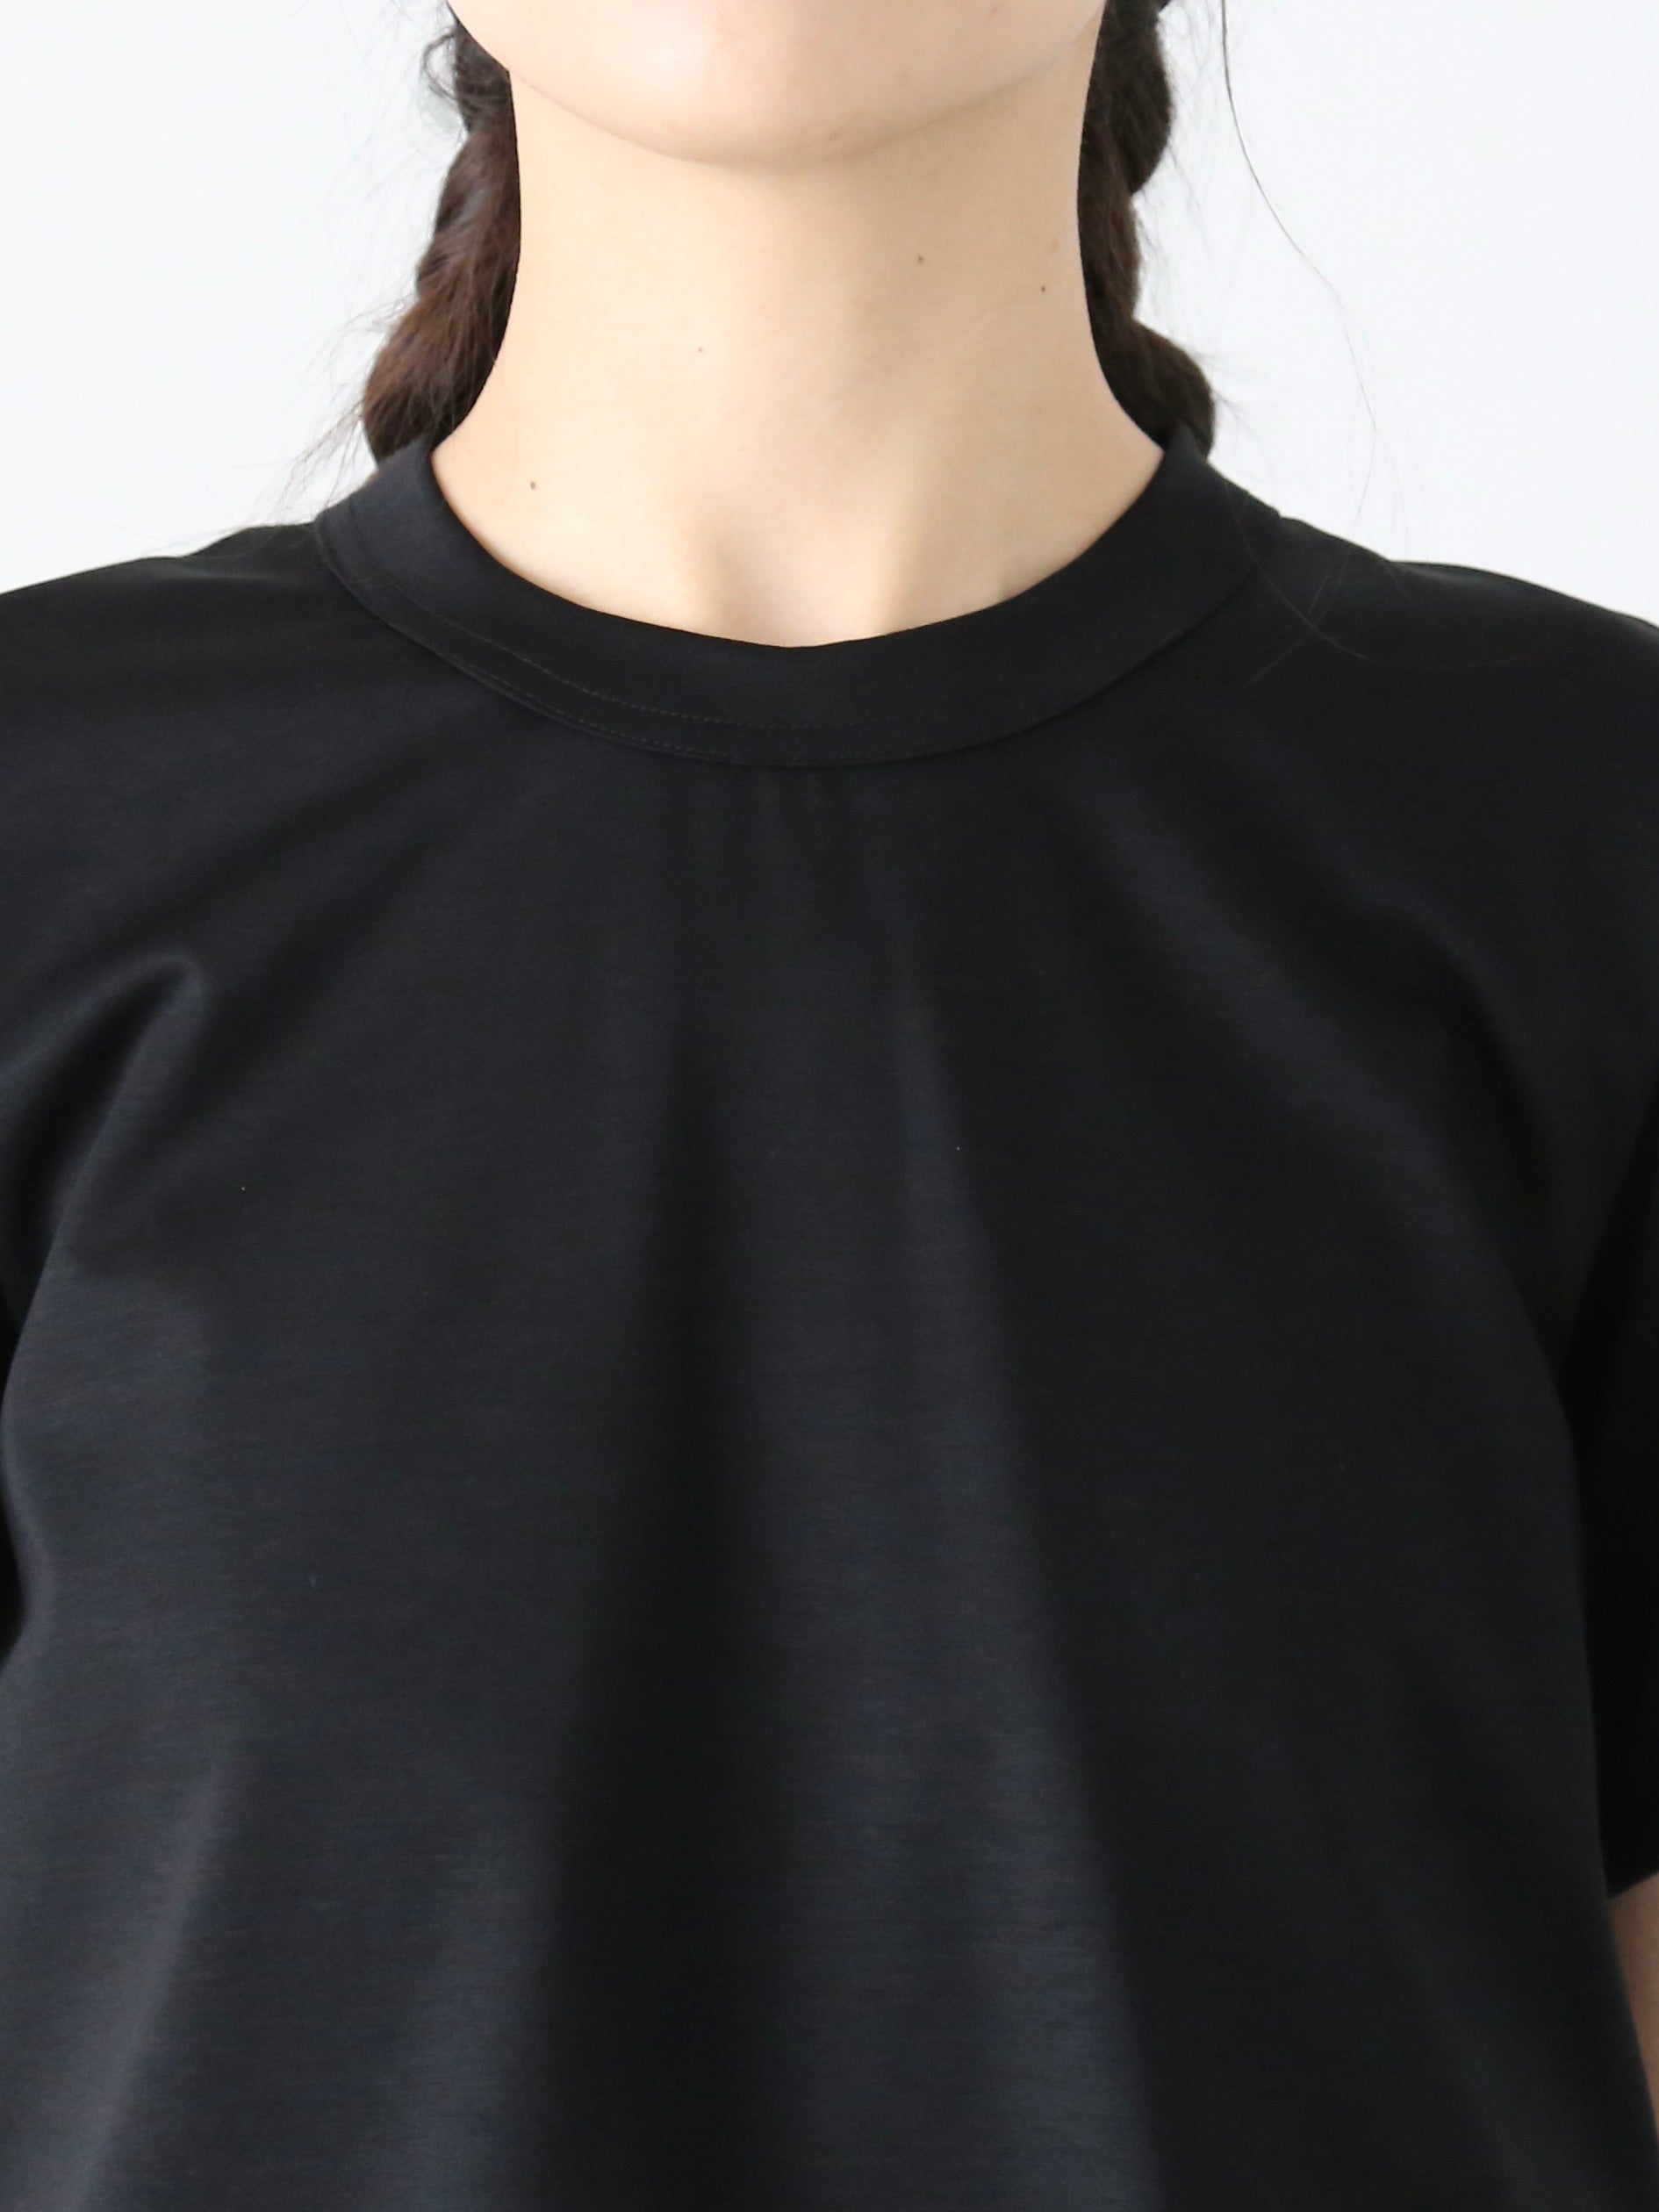 noir kei ninomiya 綿ポンチ×ナイロンチュールTシャツ [3M-T002-051]